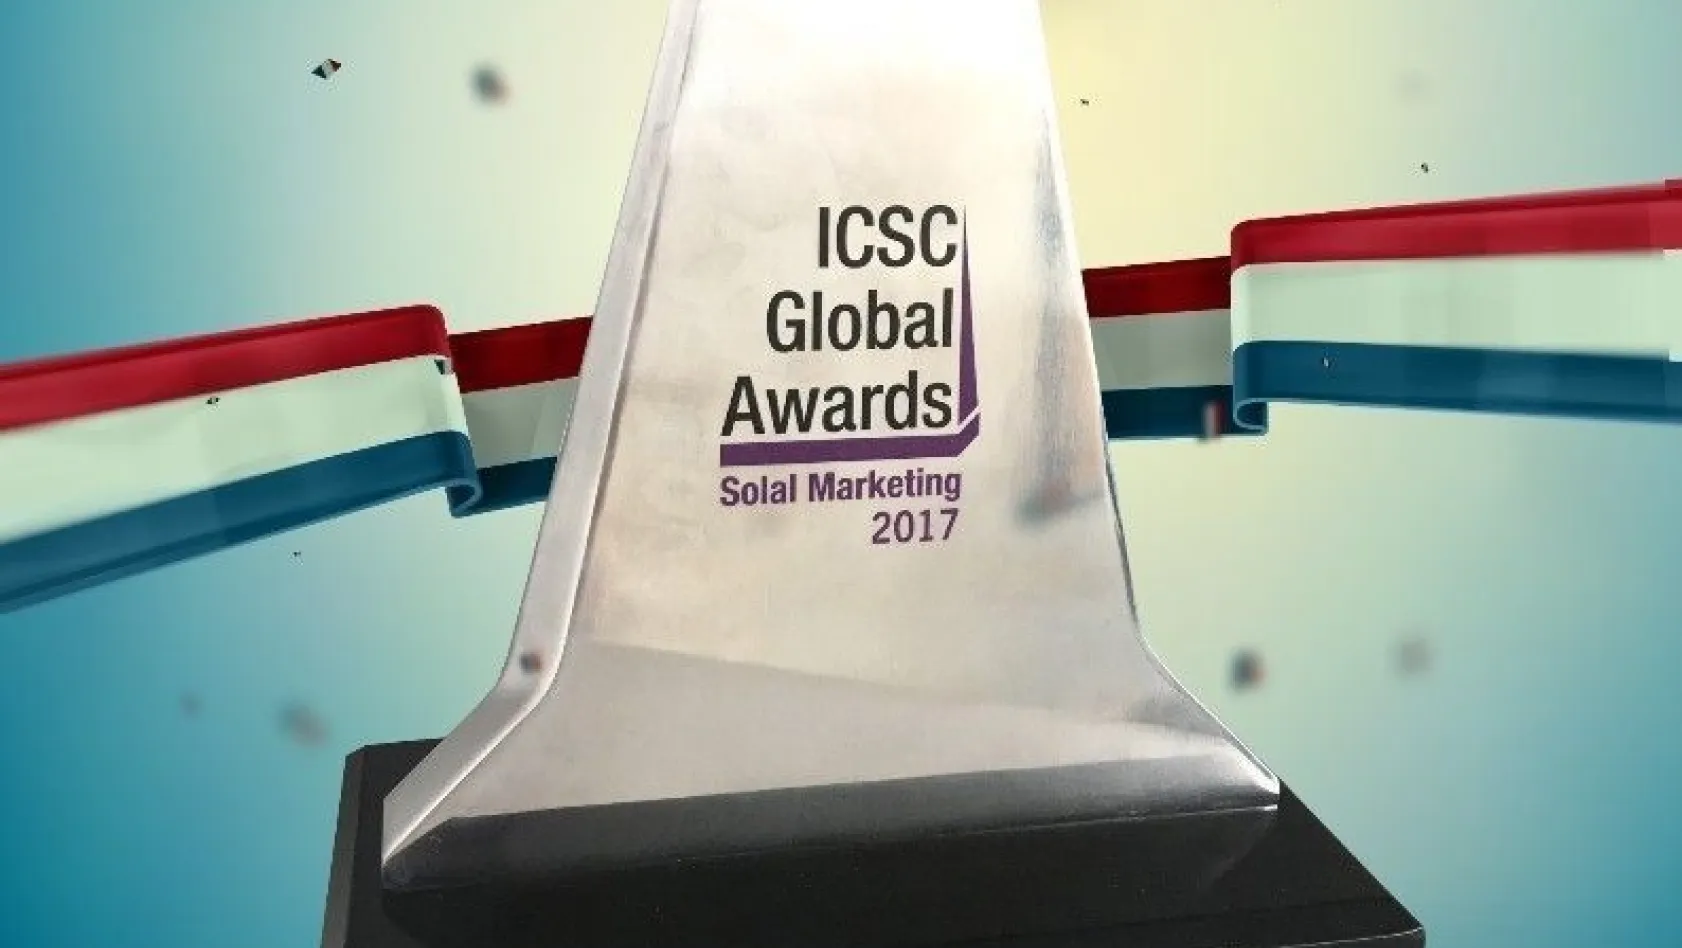 Uluslararası Alışveriş Merkezleri Konseyi ICSC'den Forum Erzurum'a gümüş ödül
